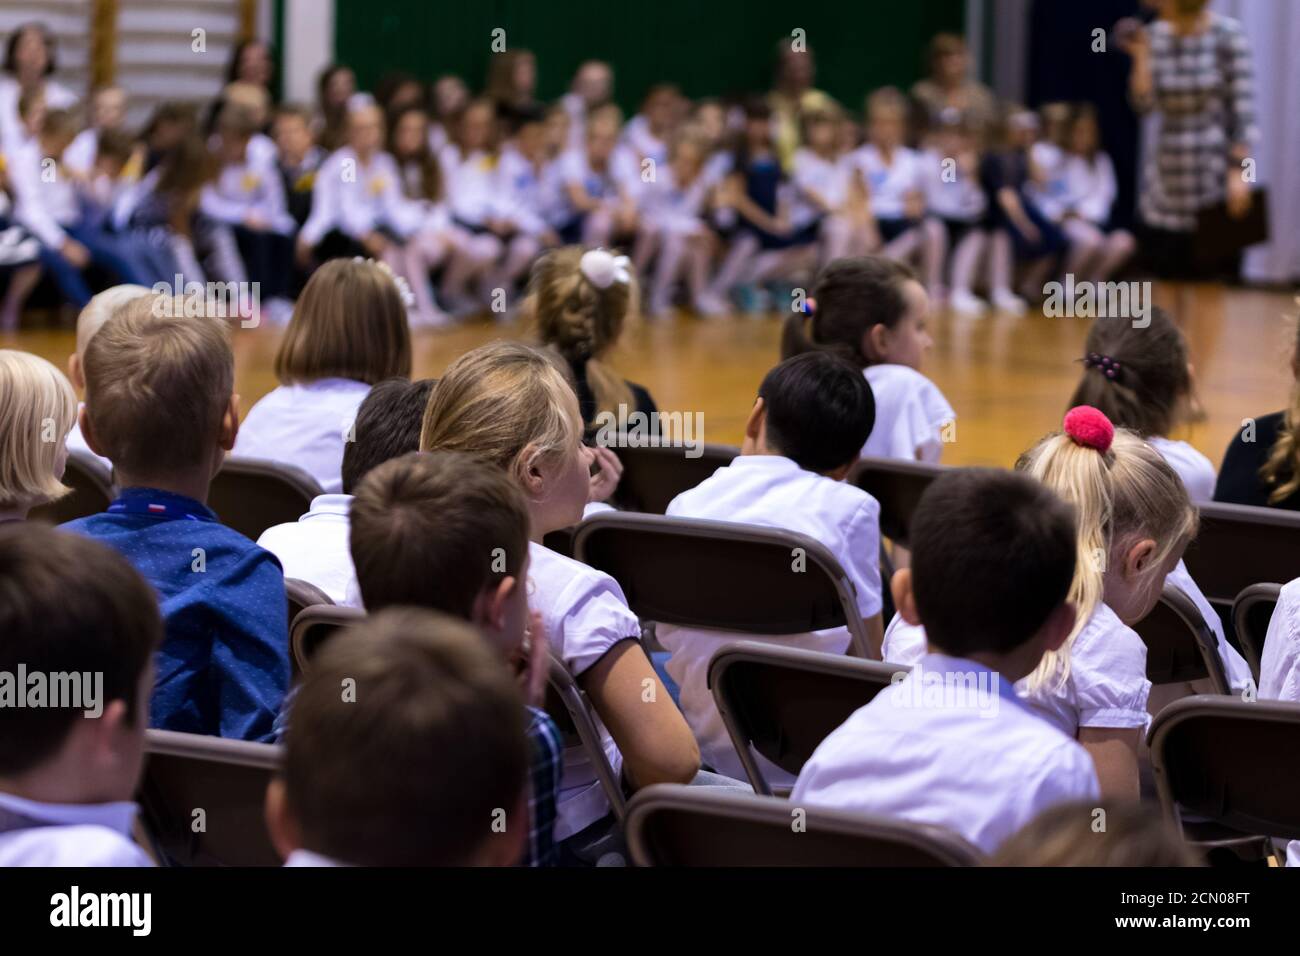 Legionowo, Polen - 25. Oktober 2019: Beginn des Schuljahres. Schüler, Eltern und Lehrer in der Turnhalle während der Schulfeier. Kinder in Form Stockfoto